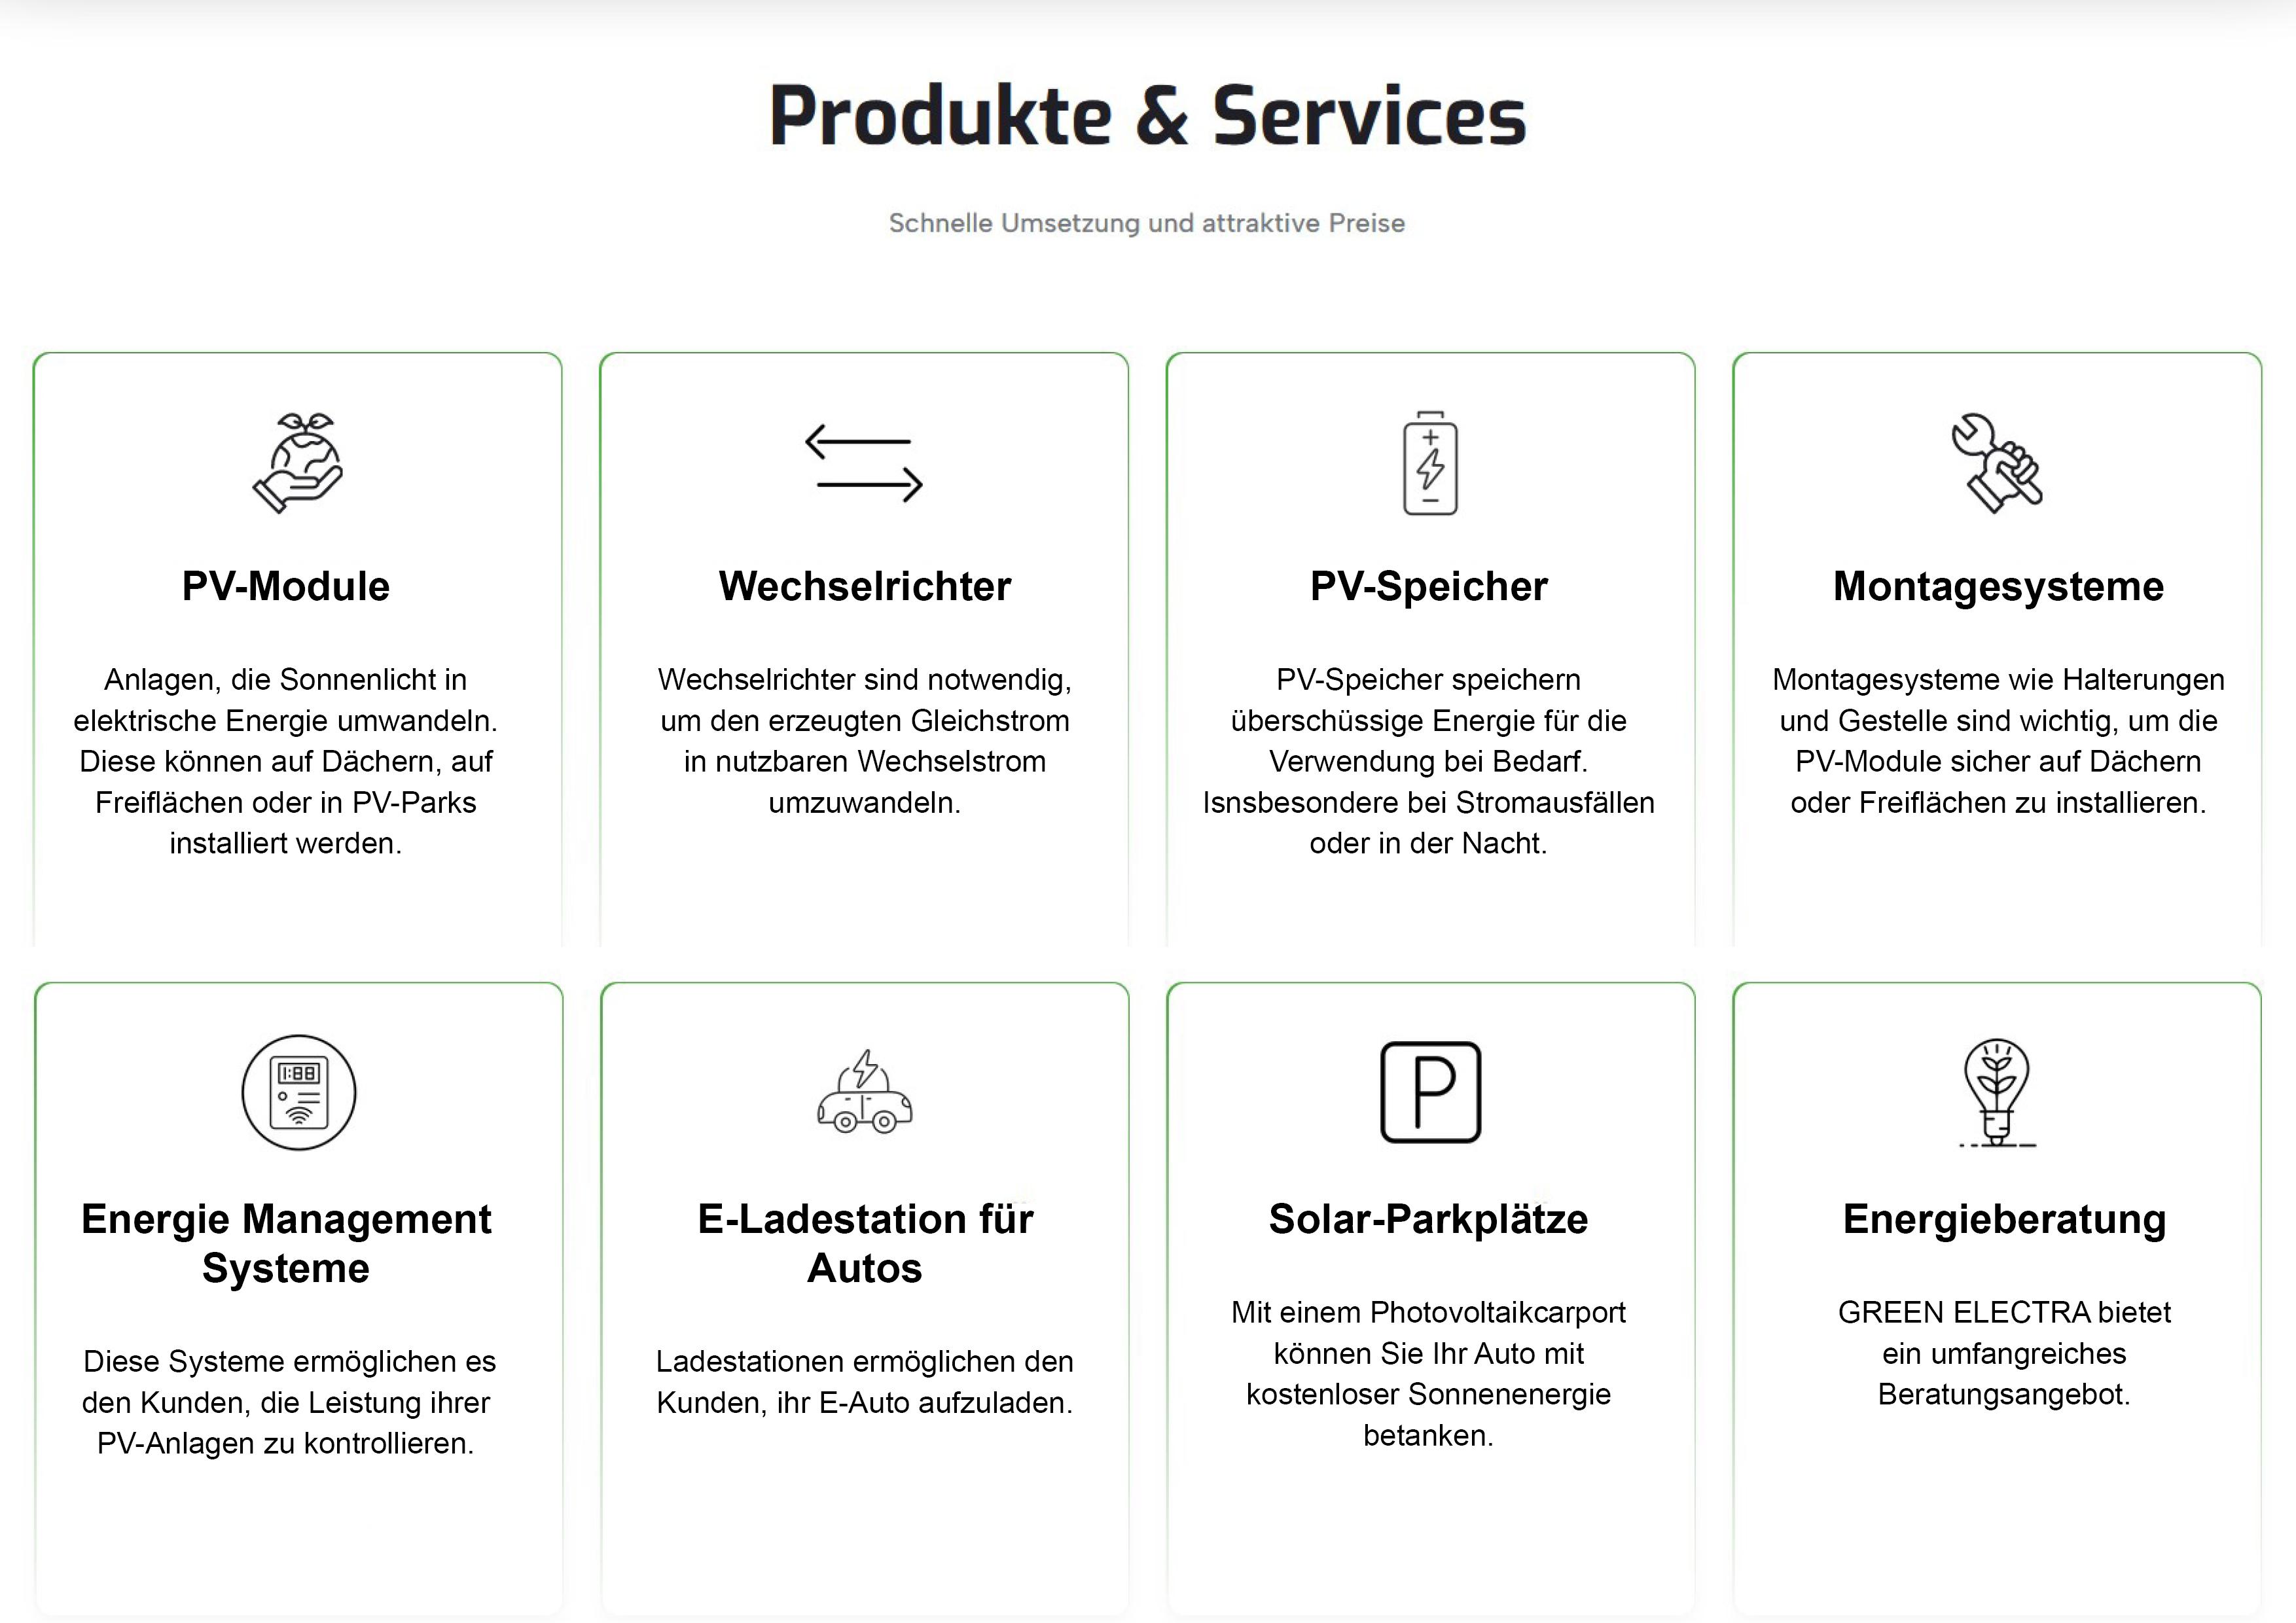 Produkte und Services von Green Electra